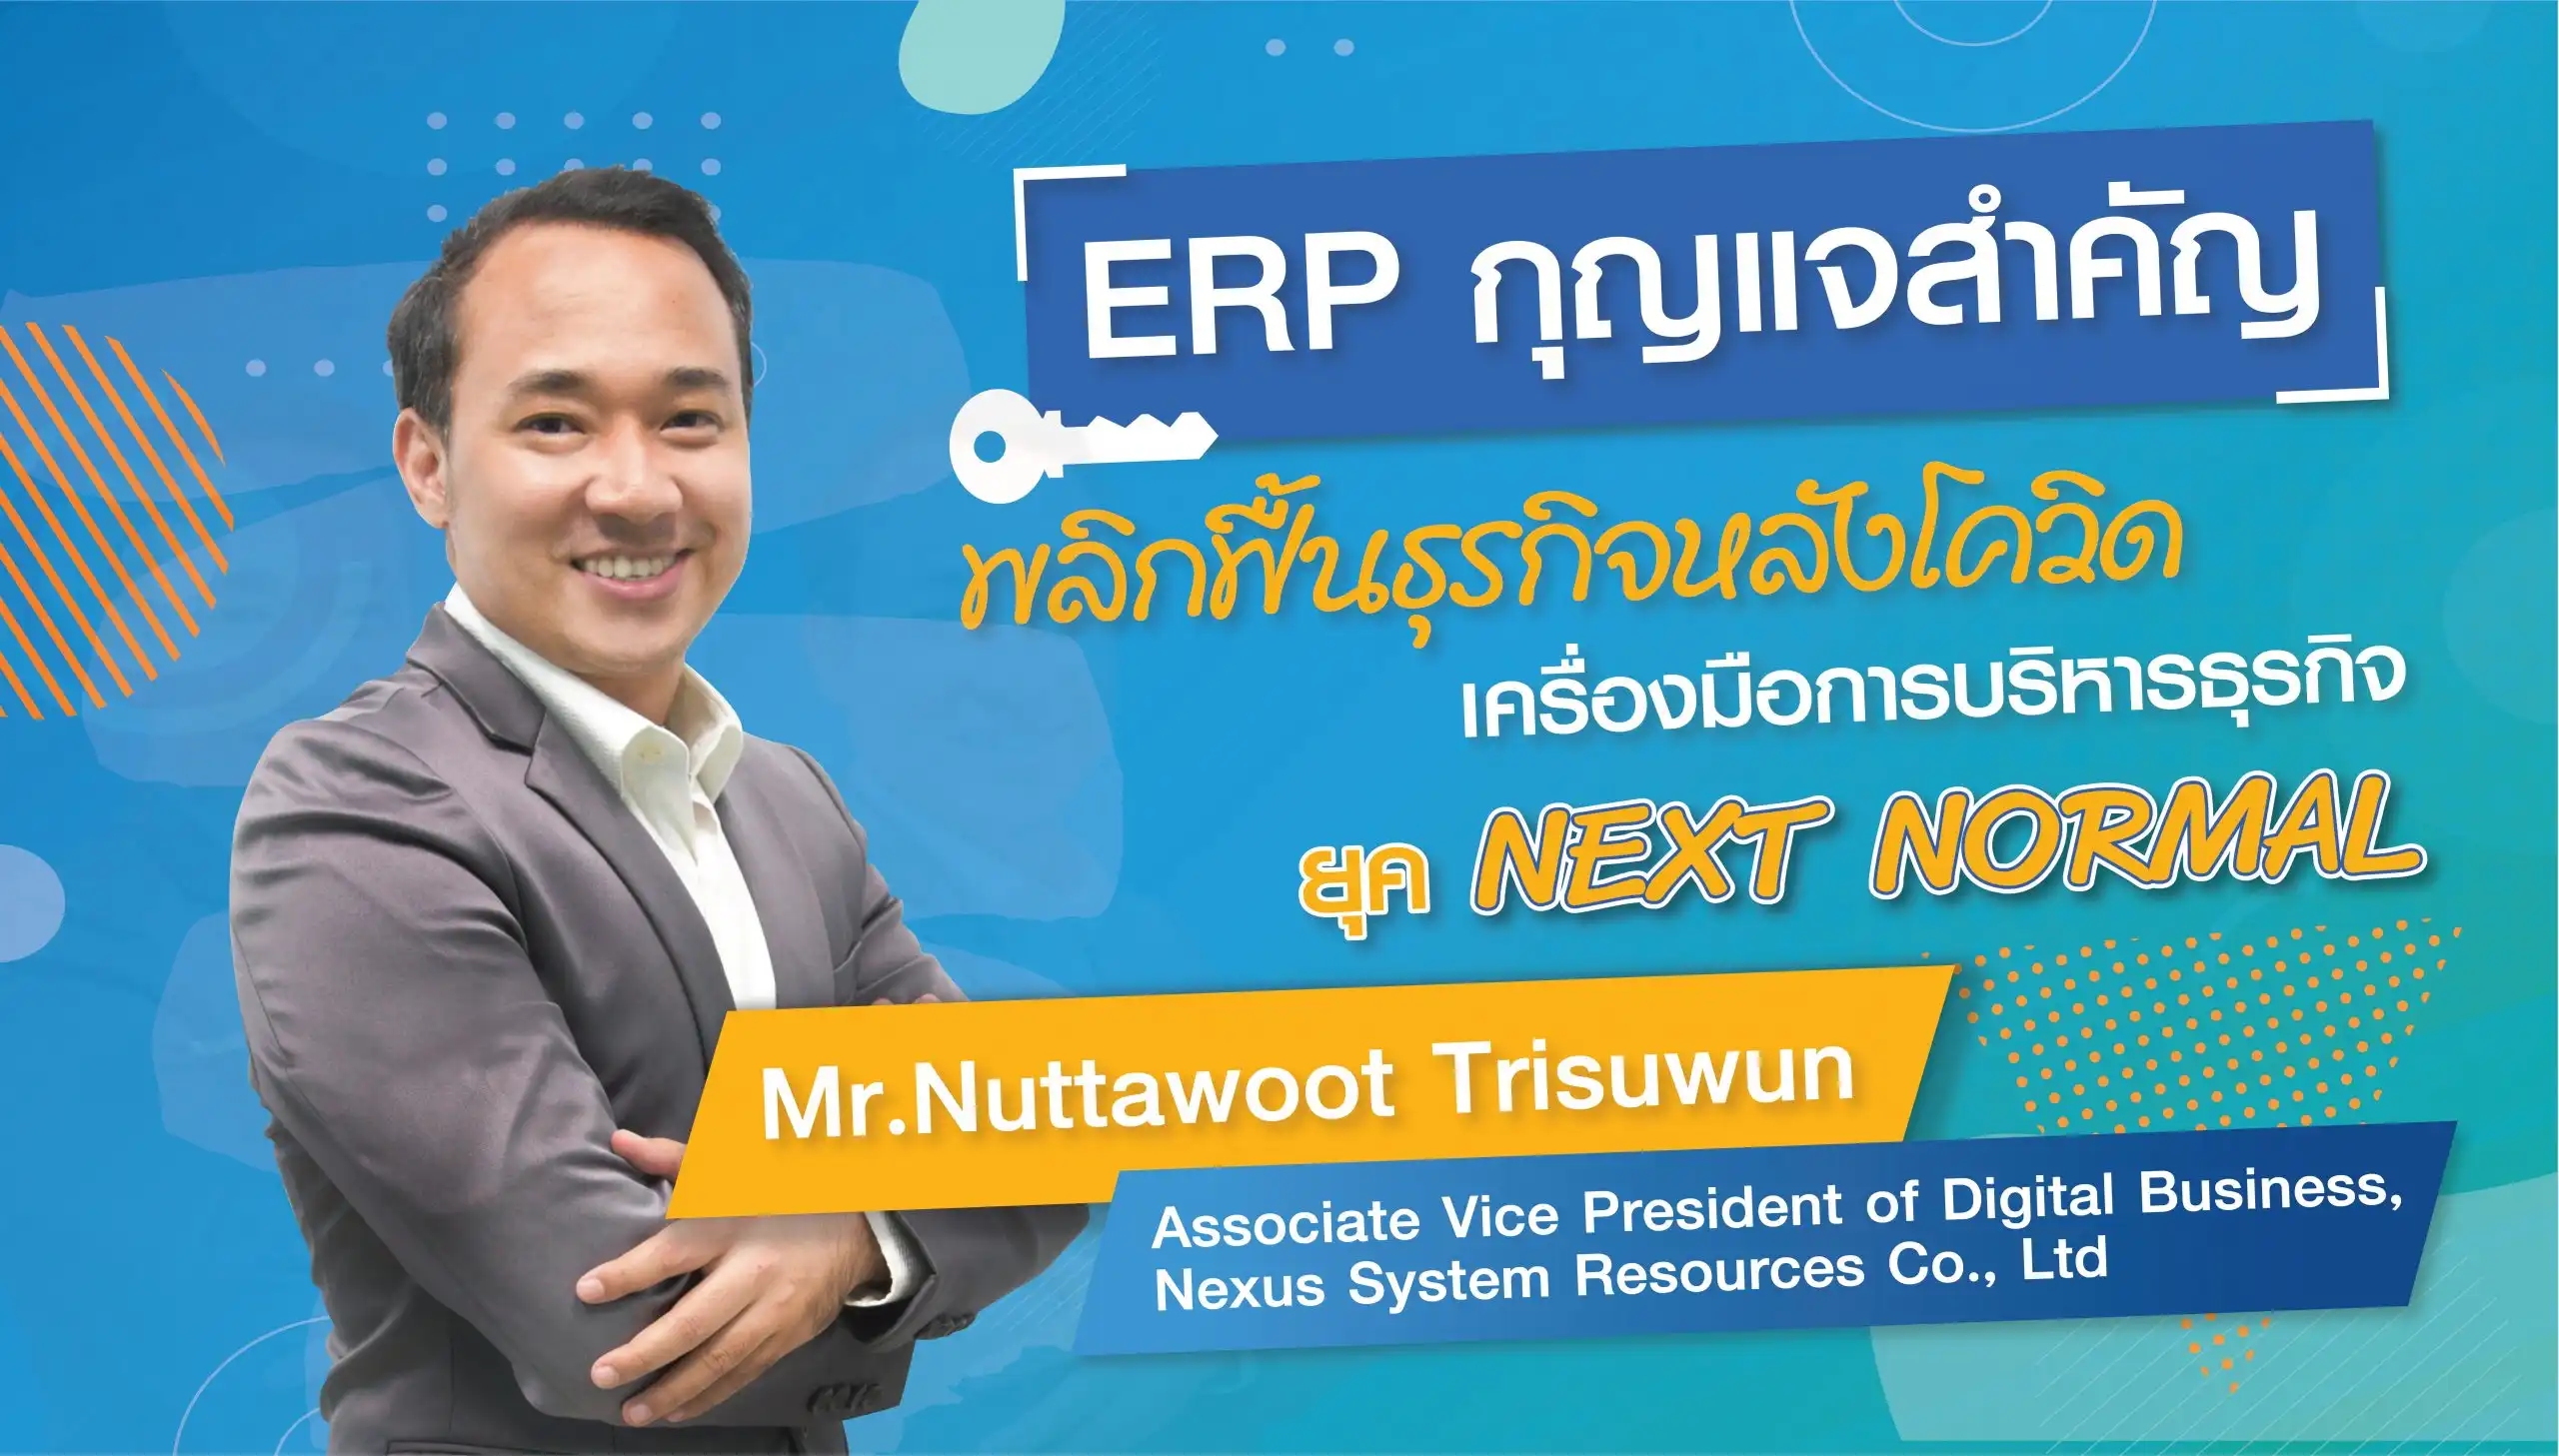 ทดลองใช้ ระบบ ERP ฟรี nexcloud ERP ซอฟต์แวร์ ERP สำหรับธุรกิจ SMEs ไทย 